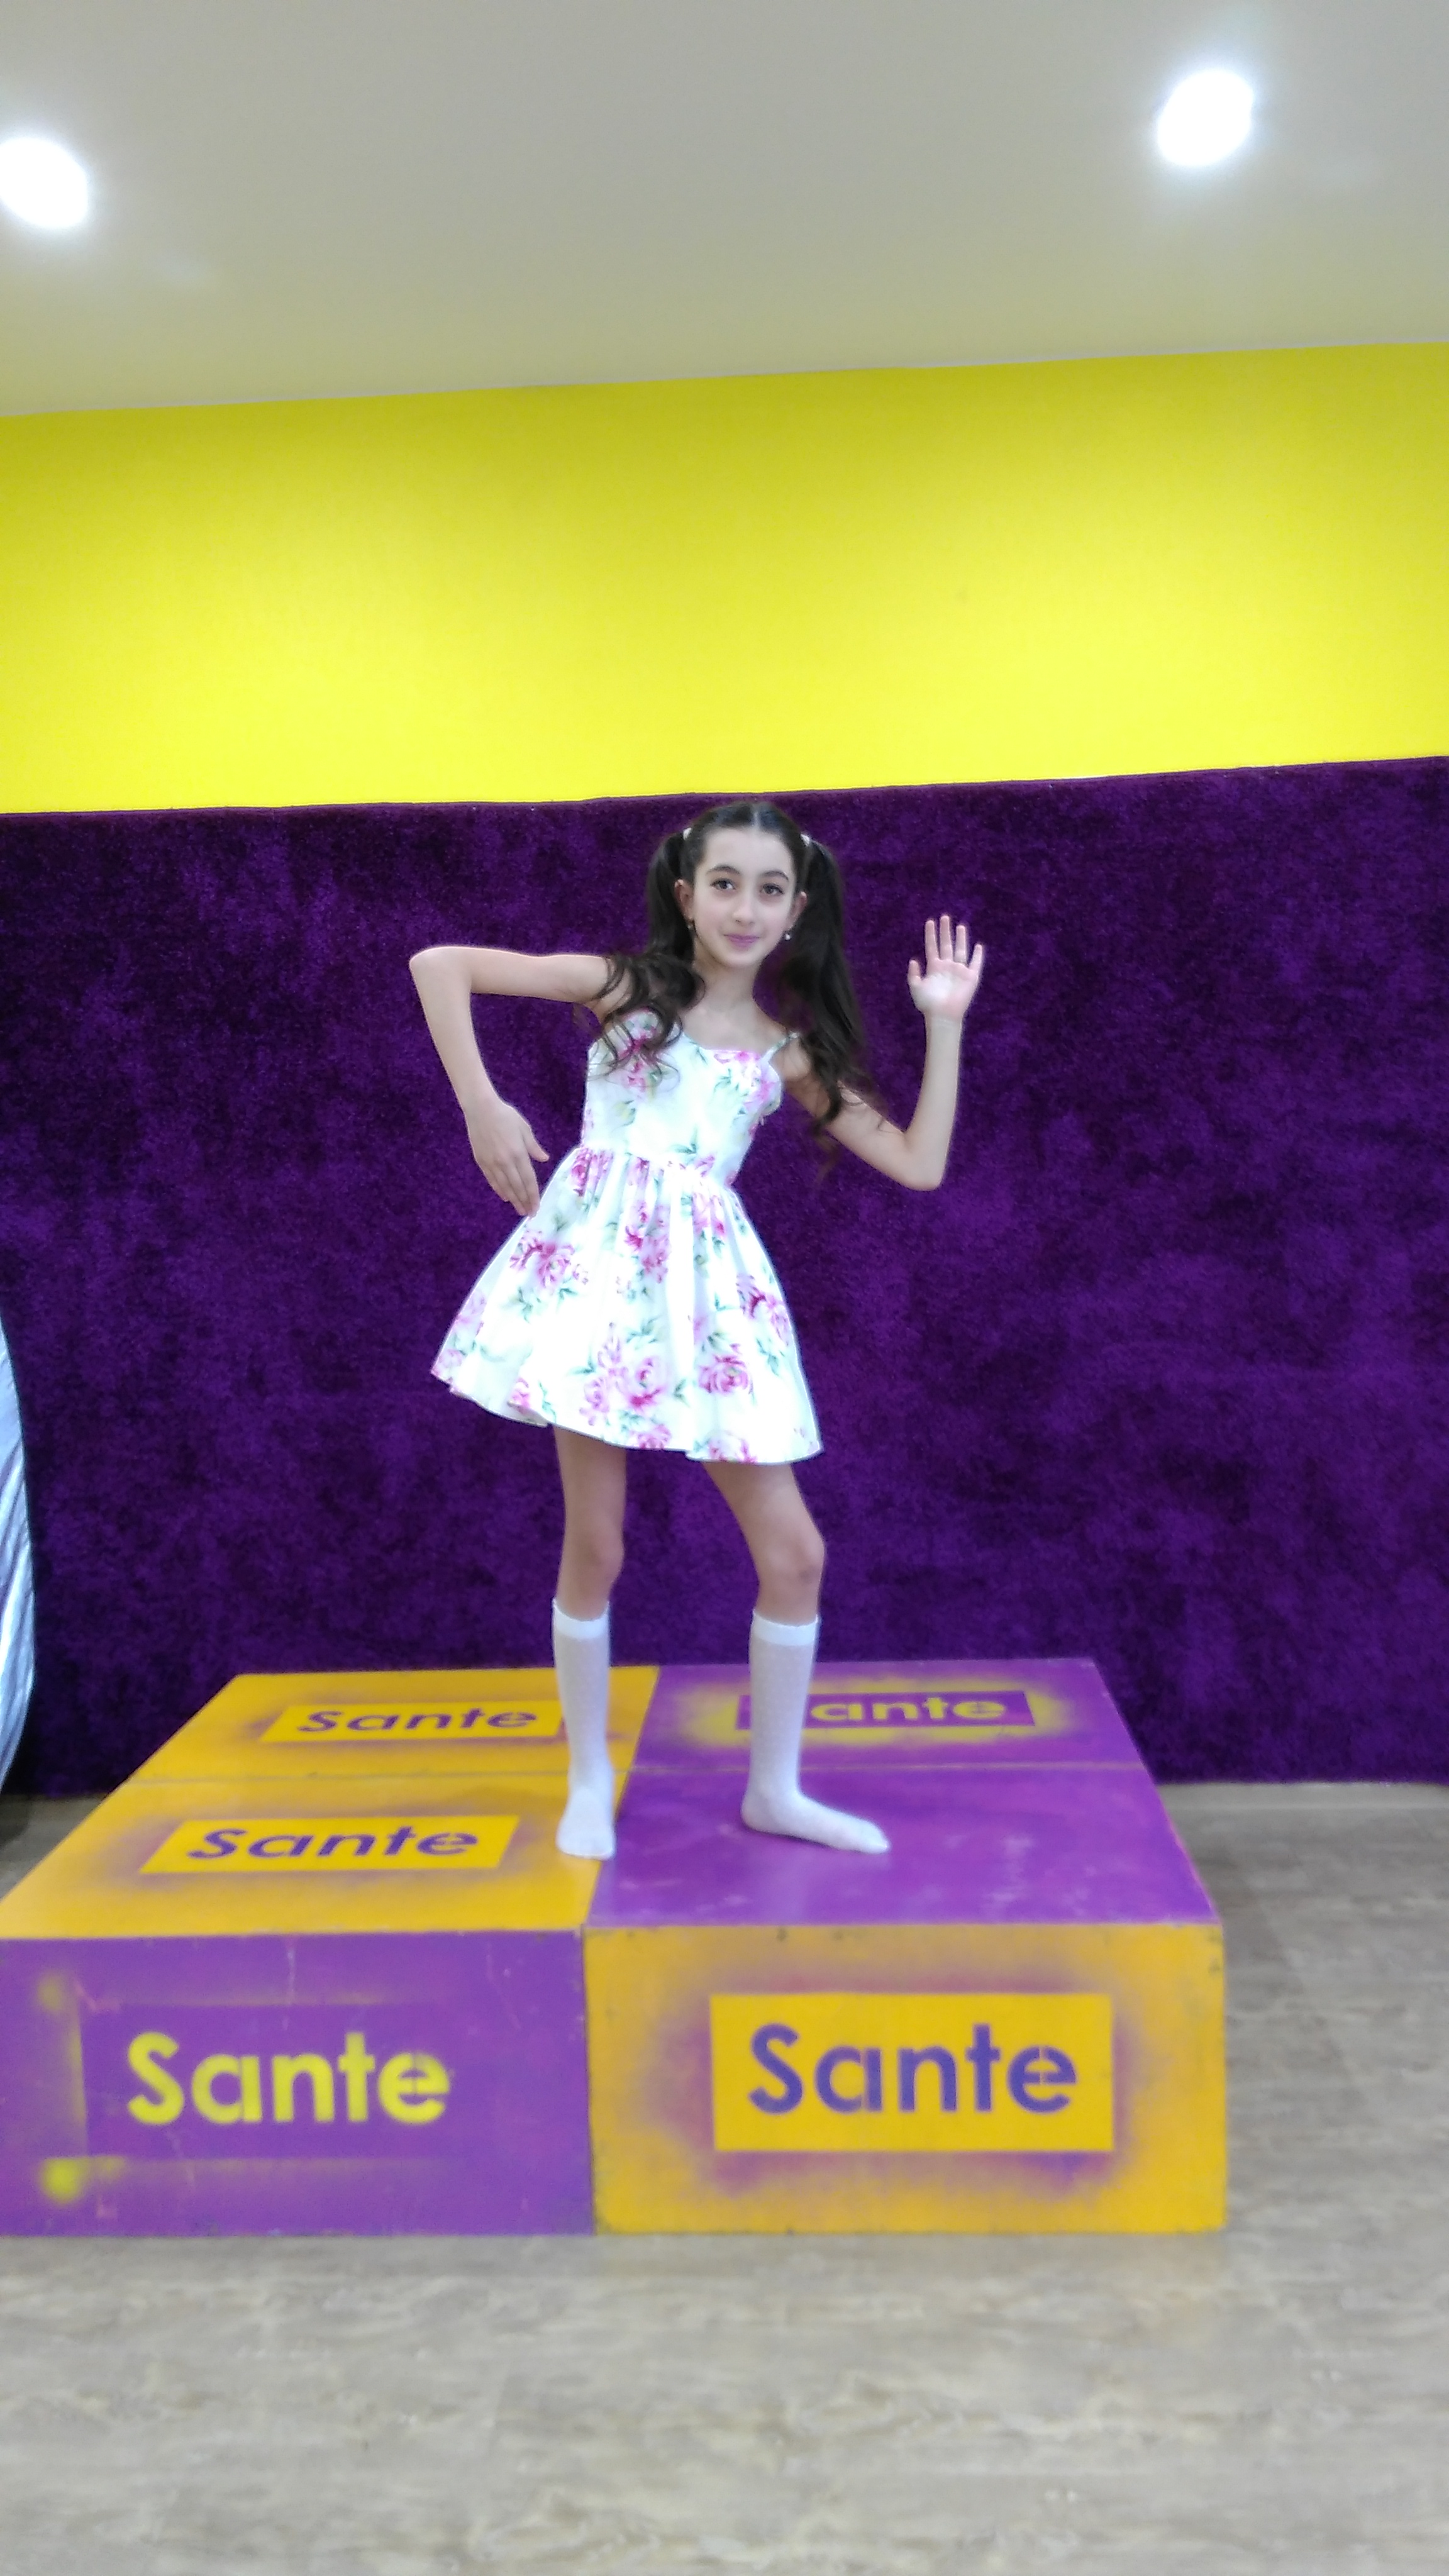 Алана Карданова - аккредитованная модель для участия в подиумных показах на Междунродной Детской Неделе моды